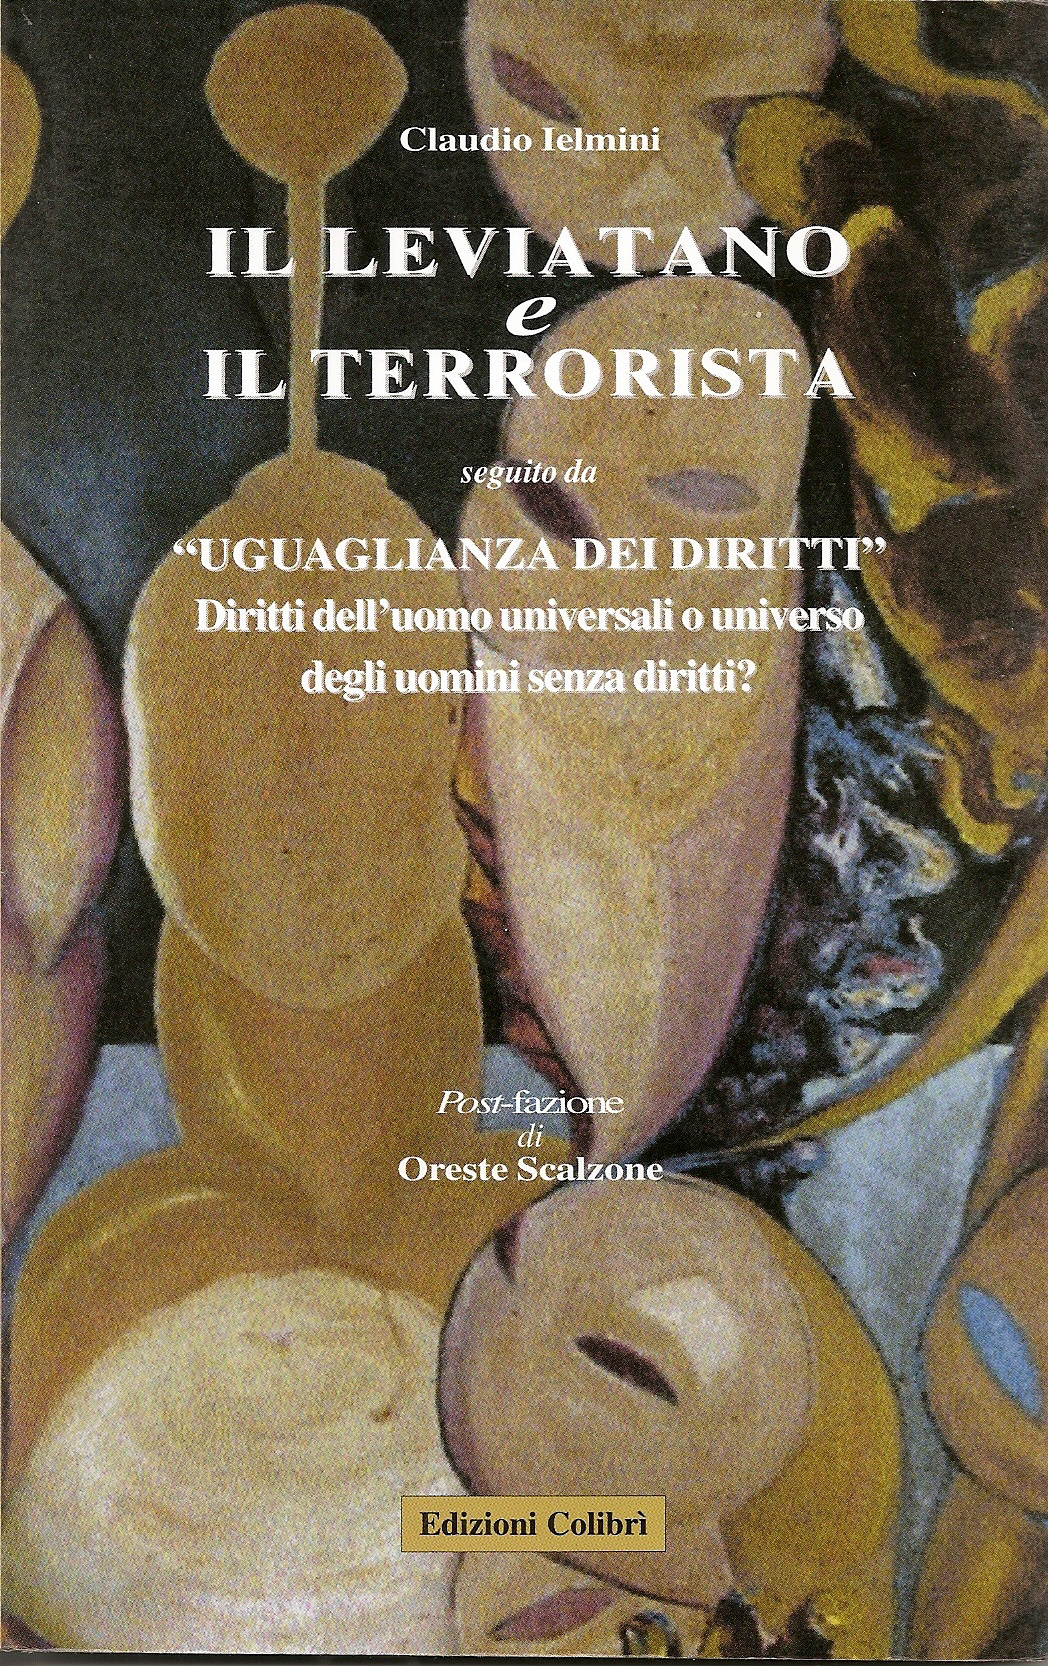 Claudio Ielmini – Il leviatano e il terrorista